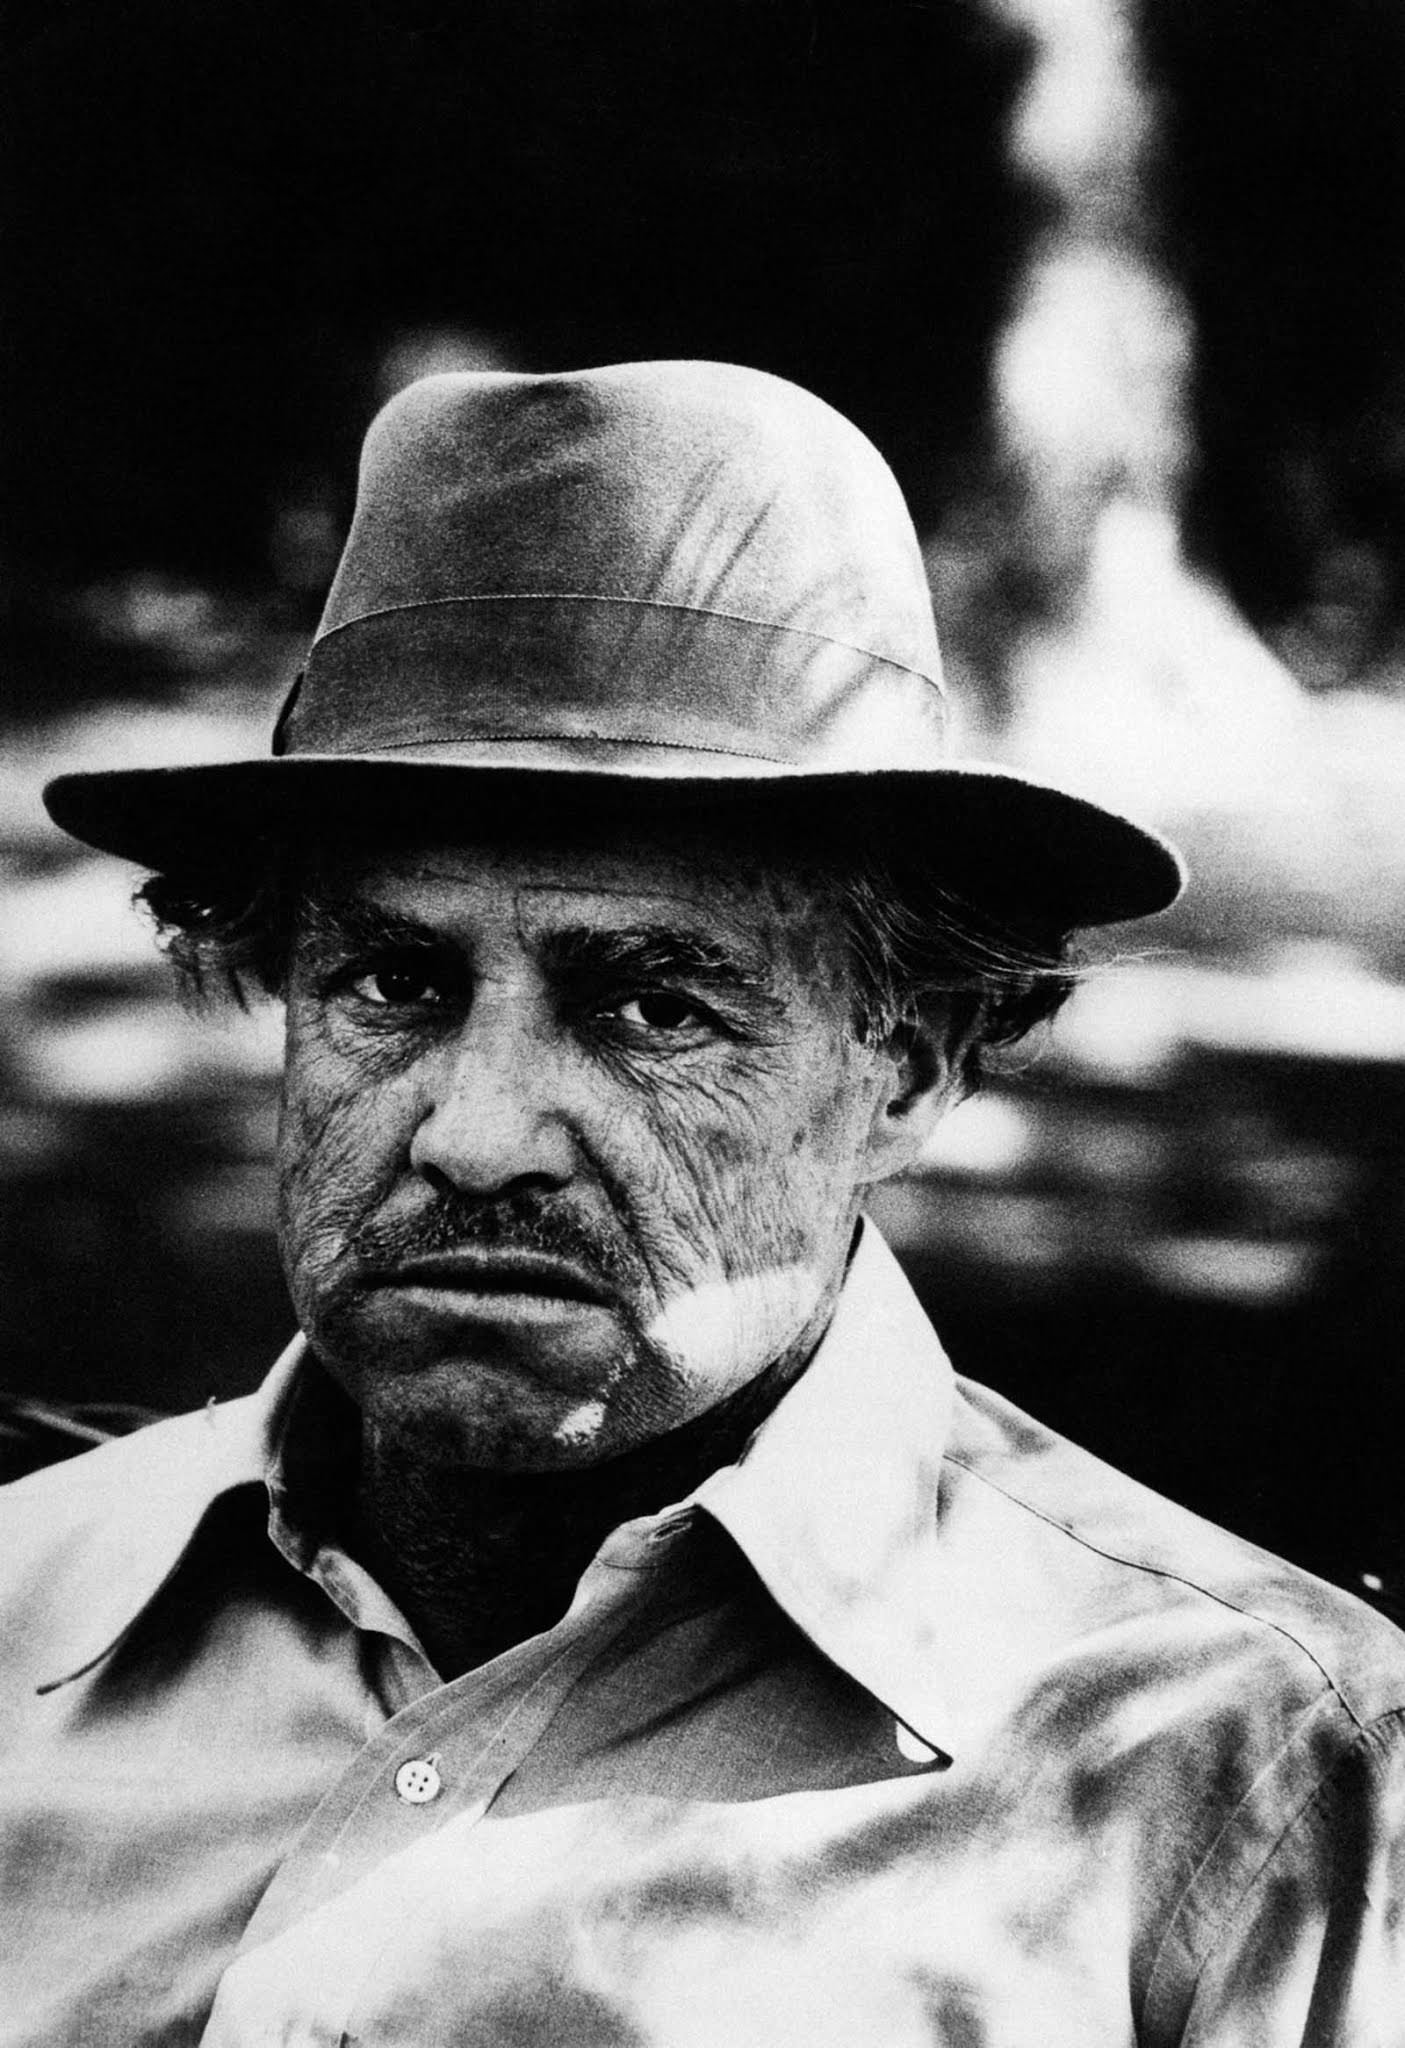 Marlon Brando in character as Don Vito Corleone.